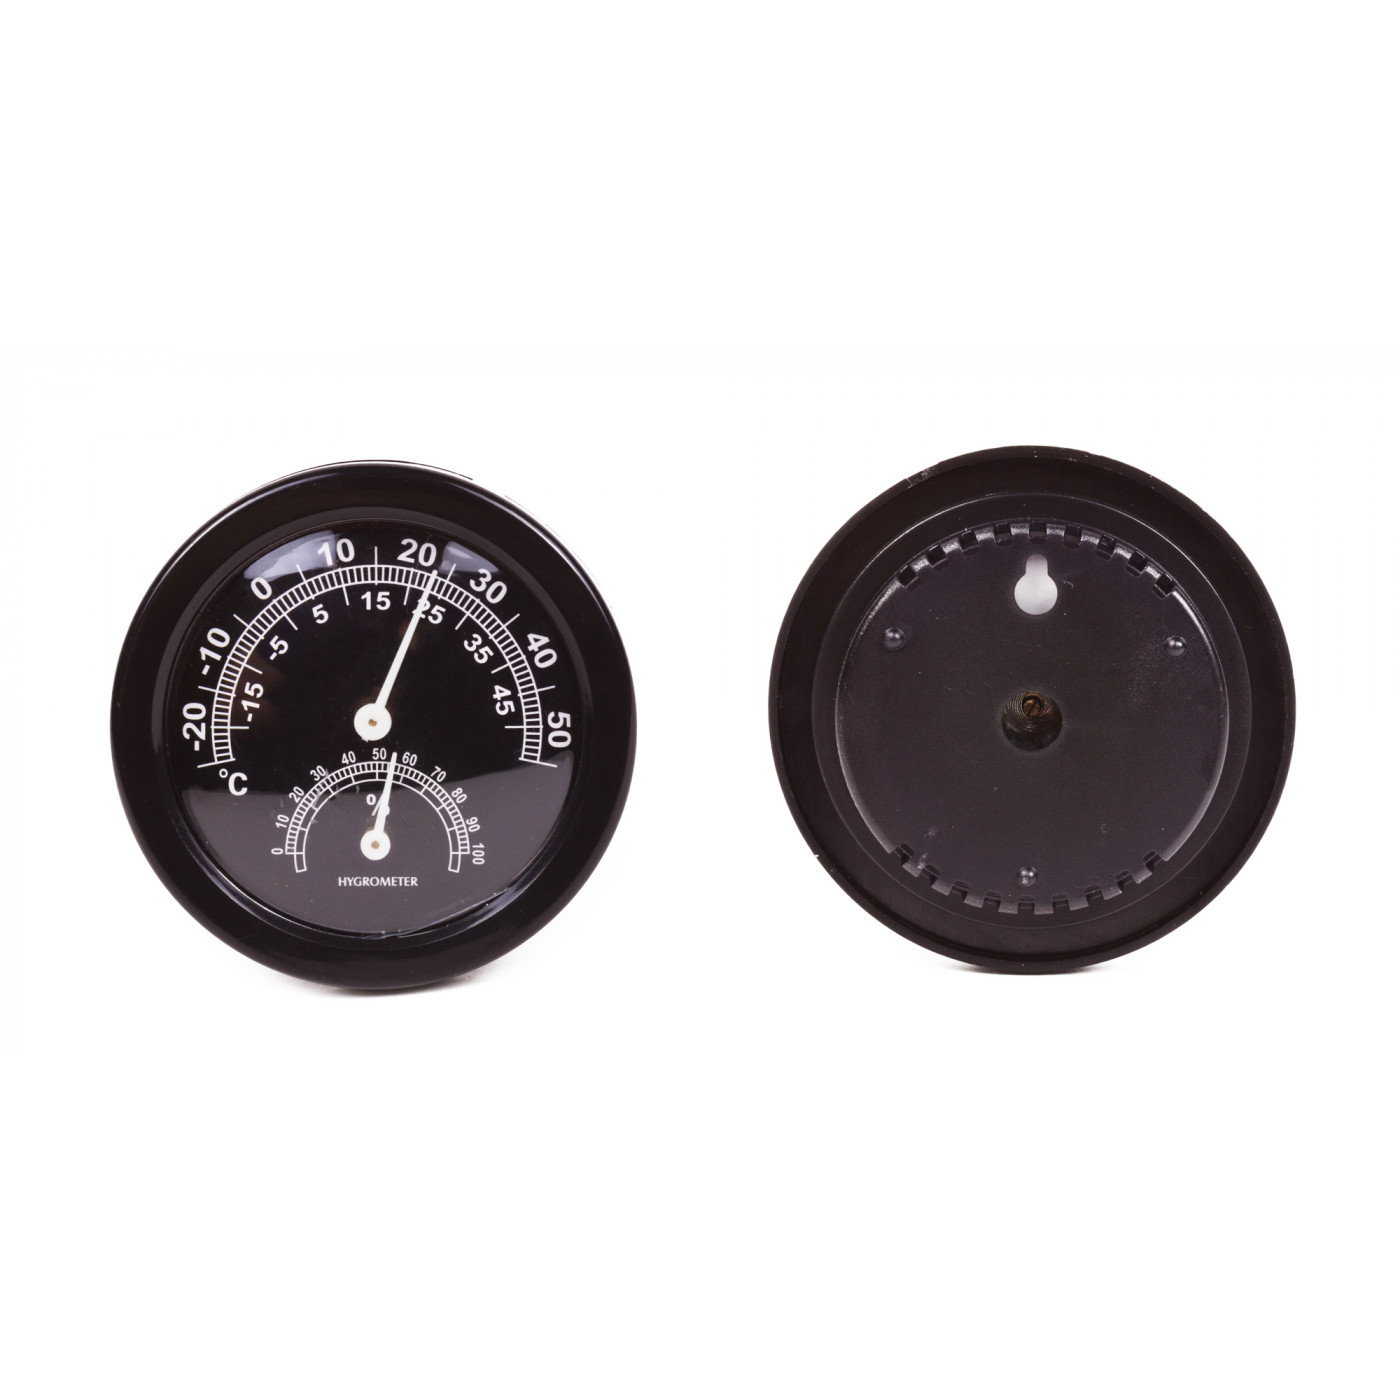 Qiterr Hygromètre numérique pour humidificateur à cigares Hilitand Thermometer Black Round Face Stock Stock Offer 